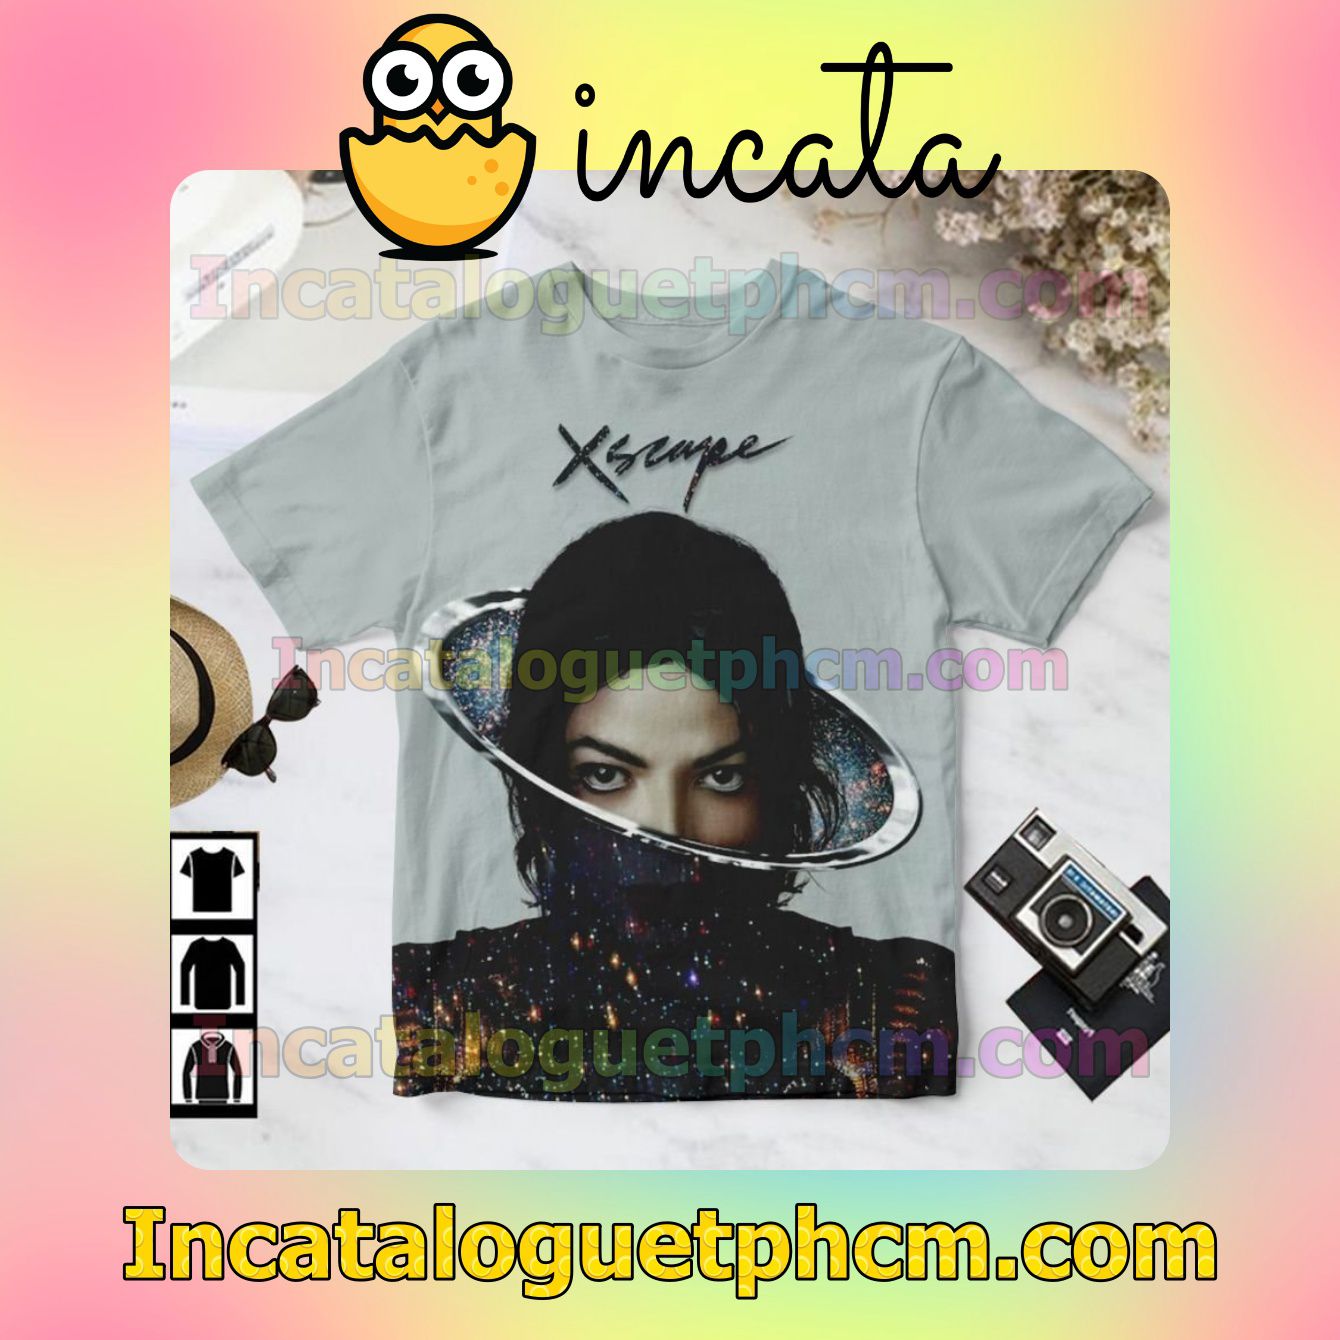 Michael Jackson Xscape Album Cover For Fan Shirt